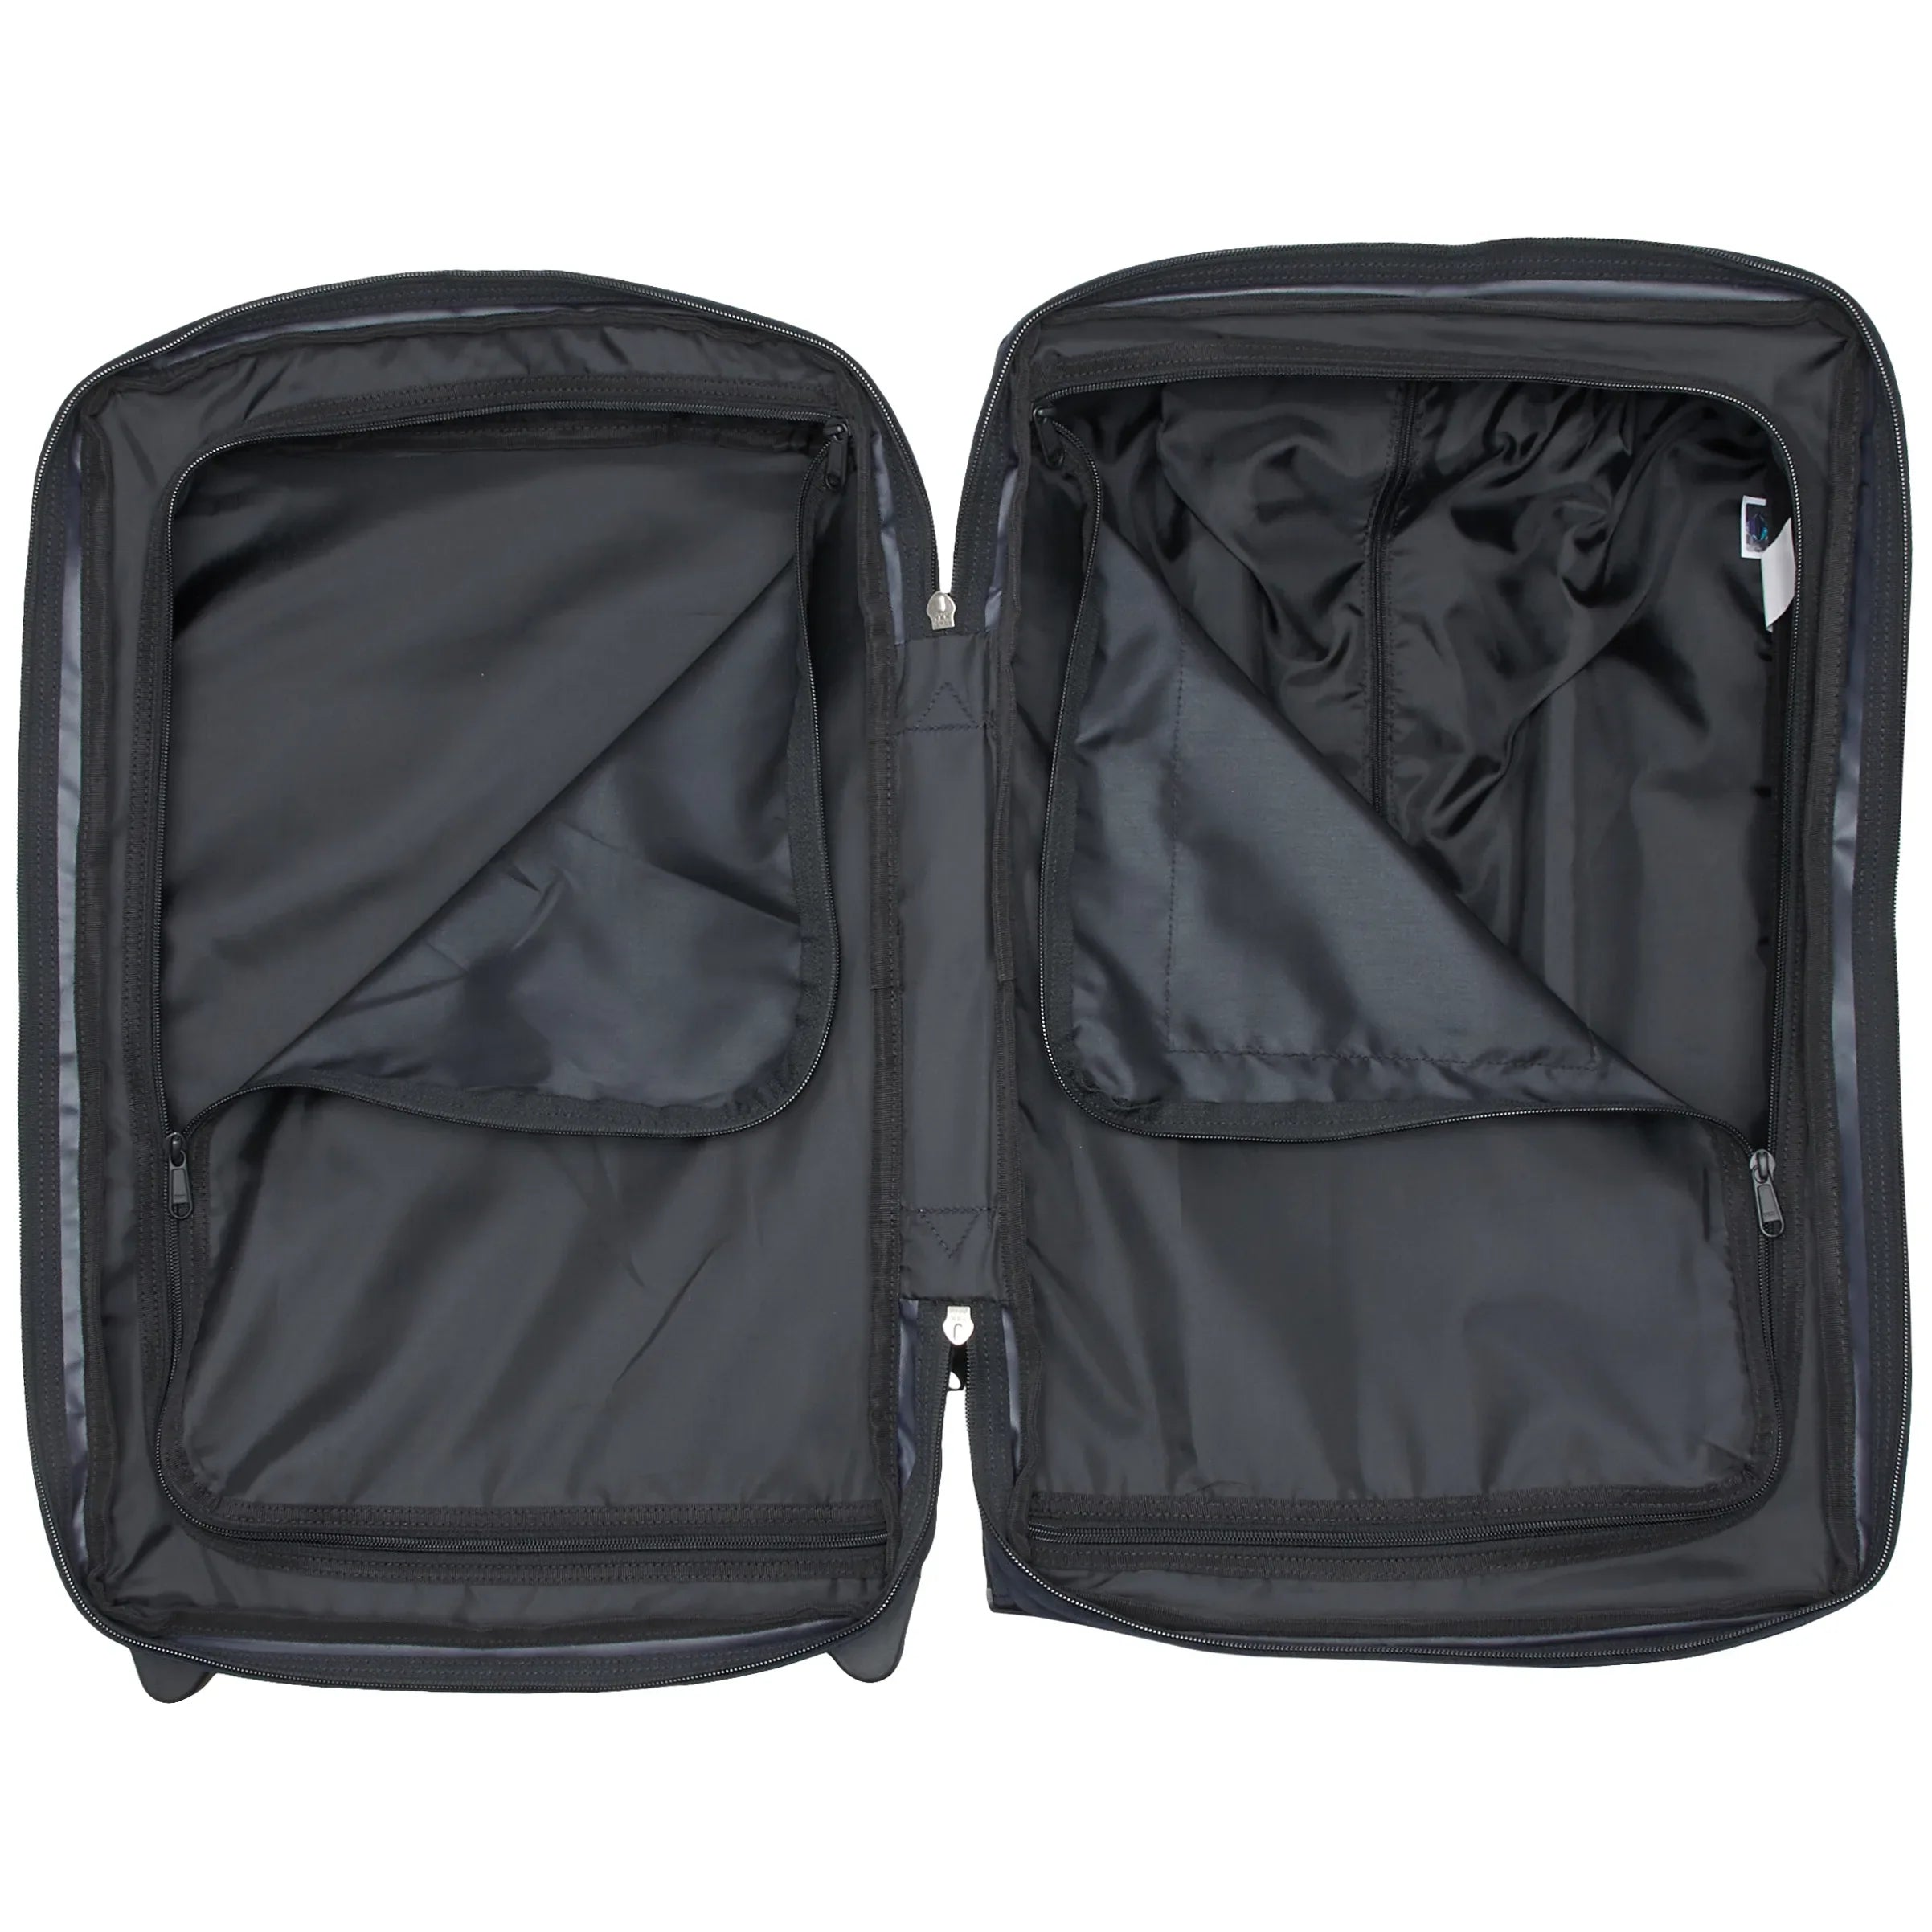 Eastpak Authentic Travel Tranverz valise cabine 2 roues 51 cm - noir